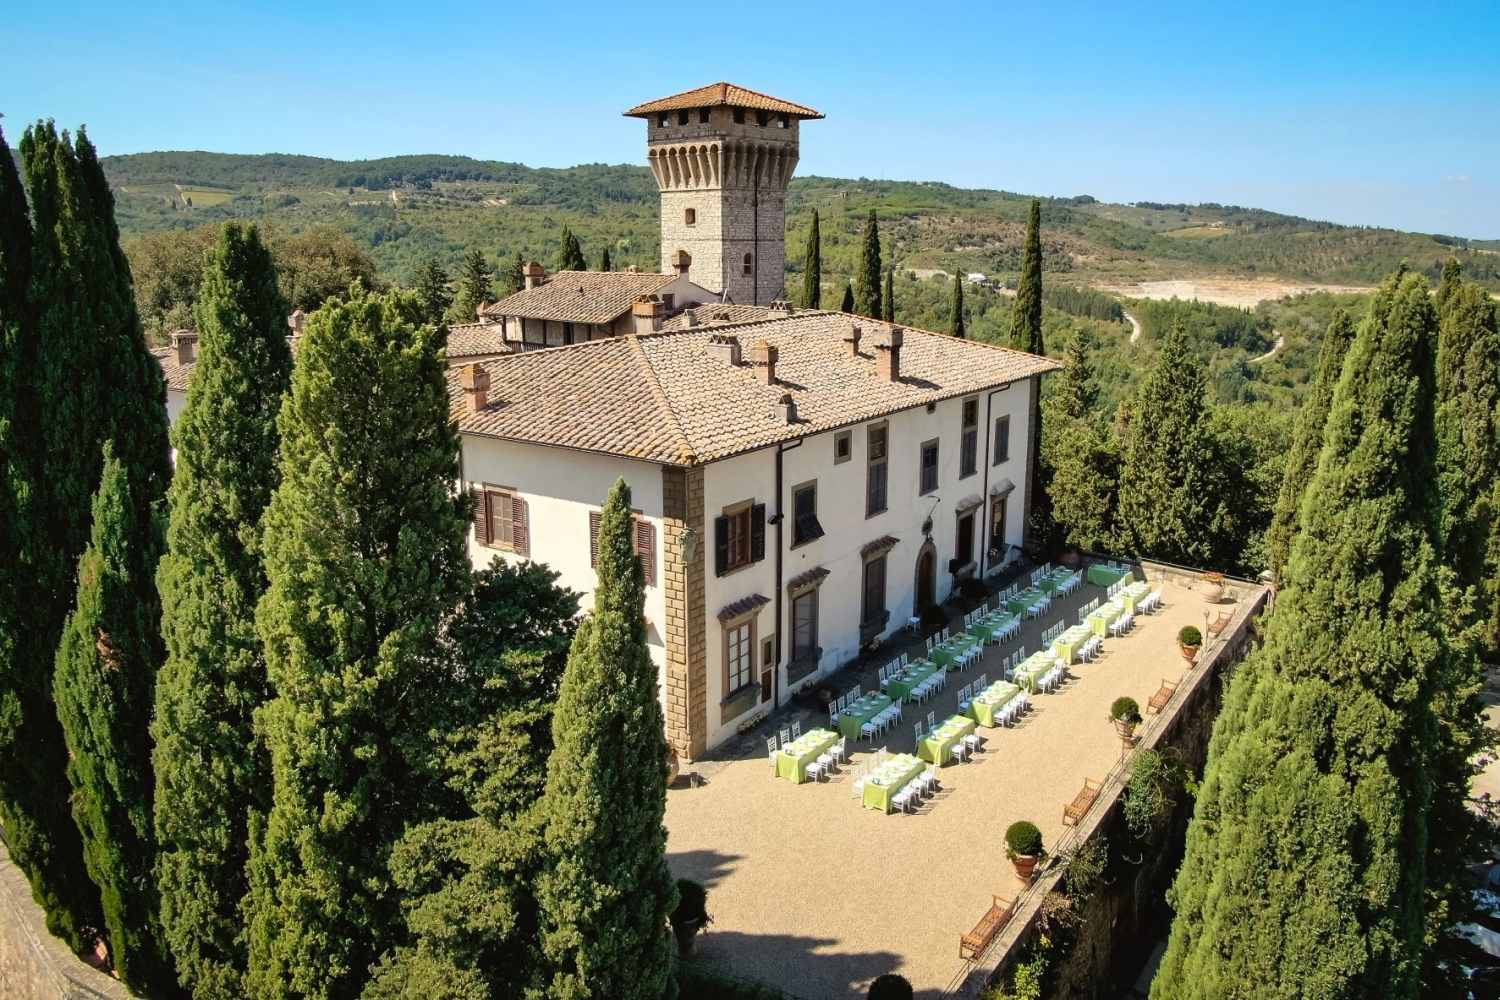 Castello Vicchiomaggio Greve in Chianti, Tuscany - Italy